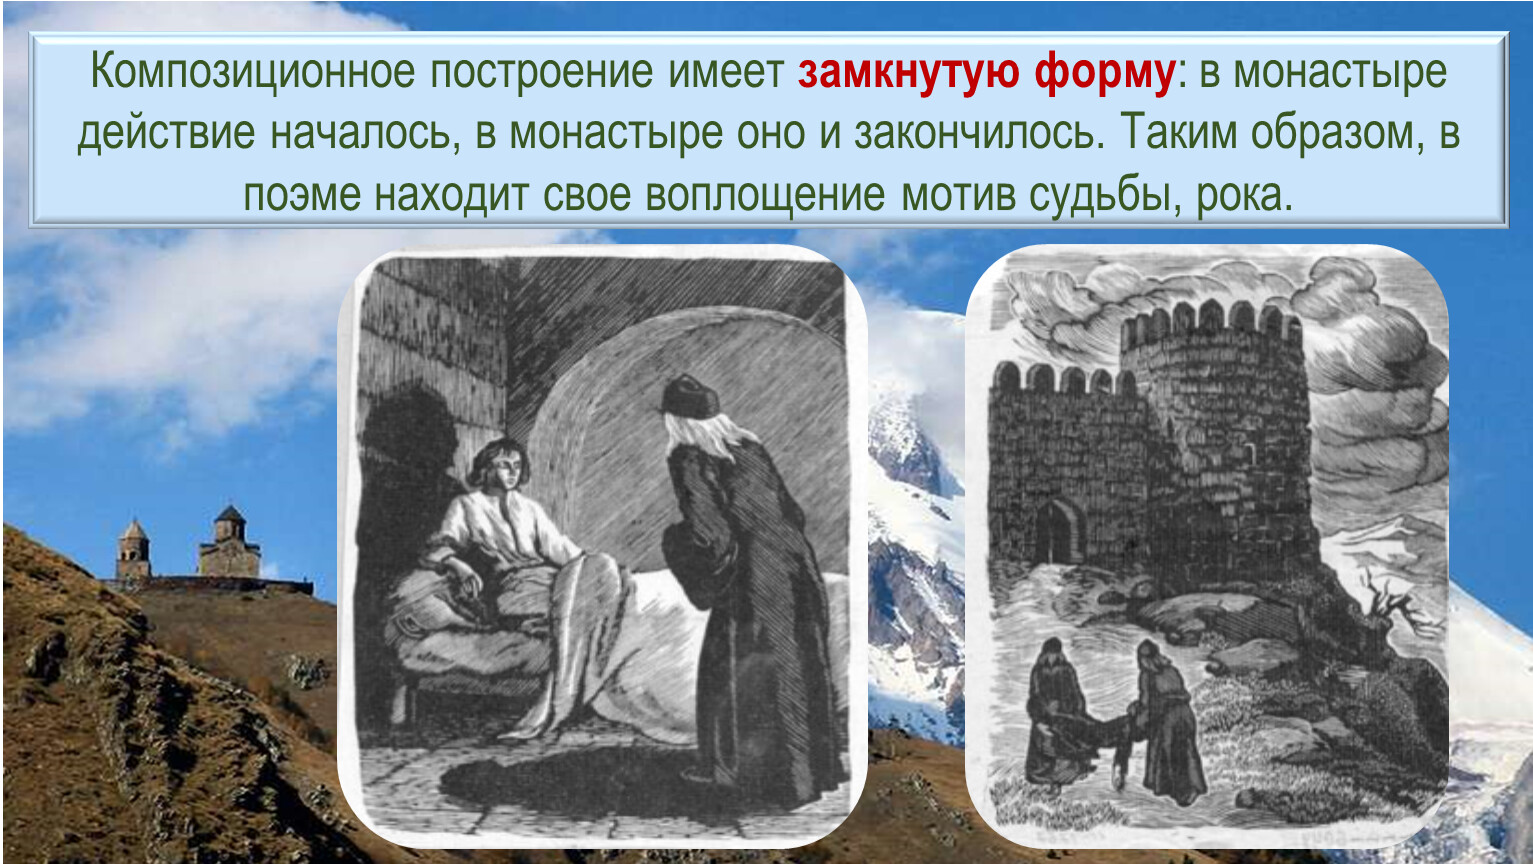 Мцыри монастырь иллюстрации